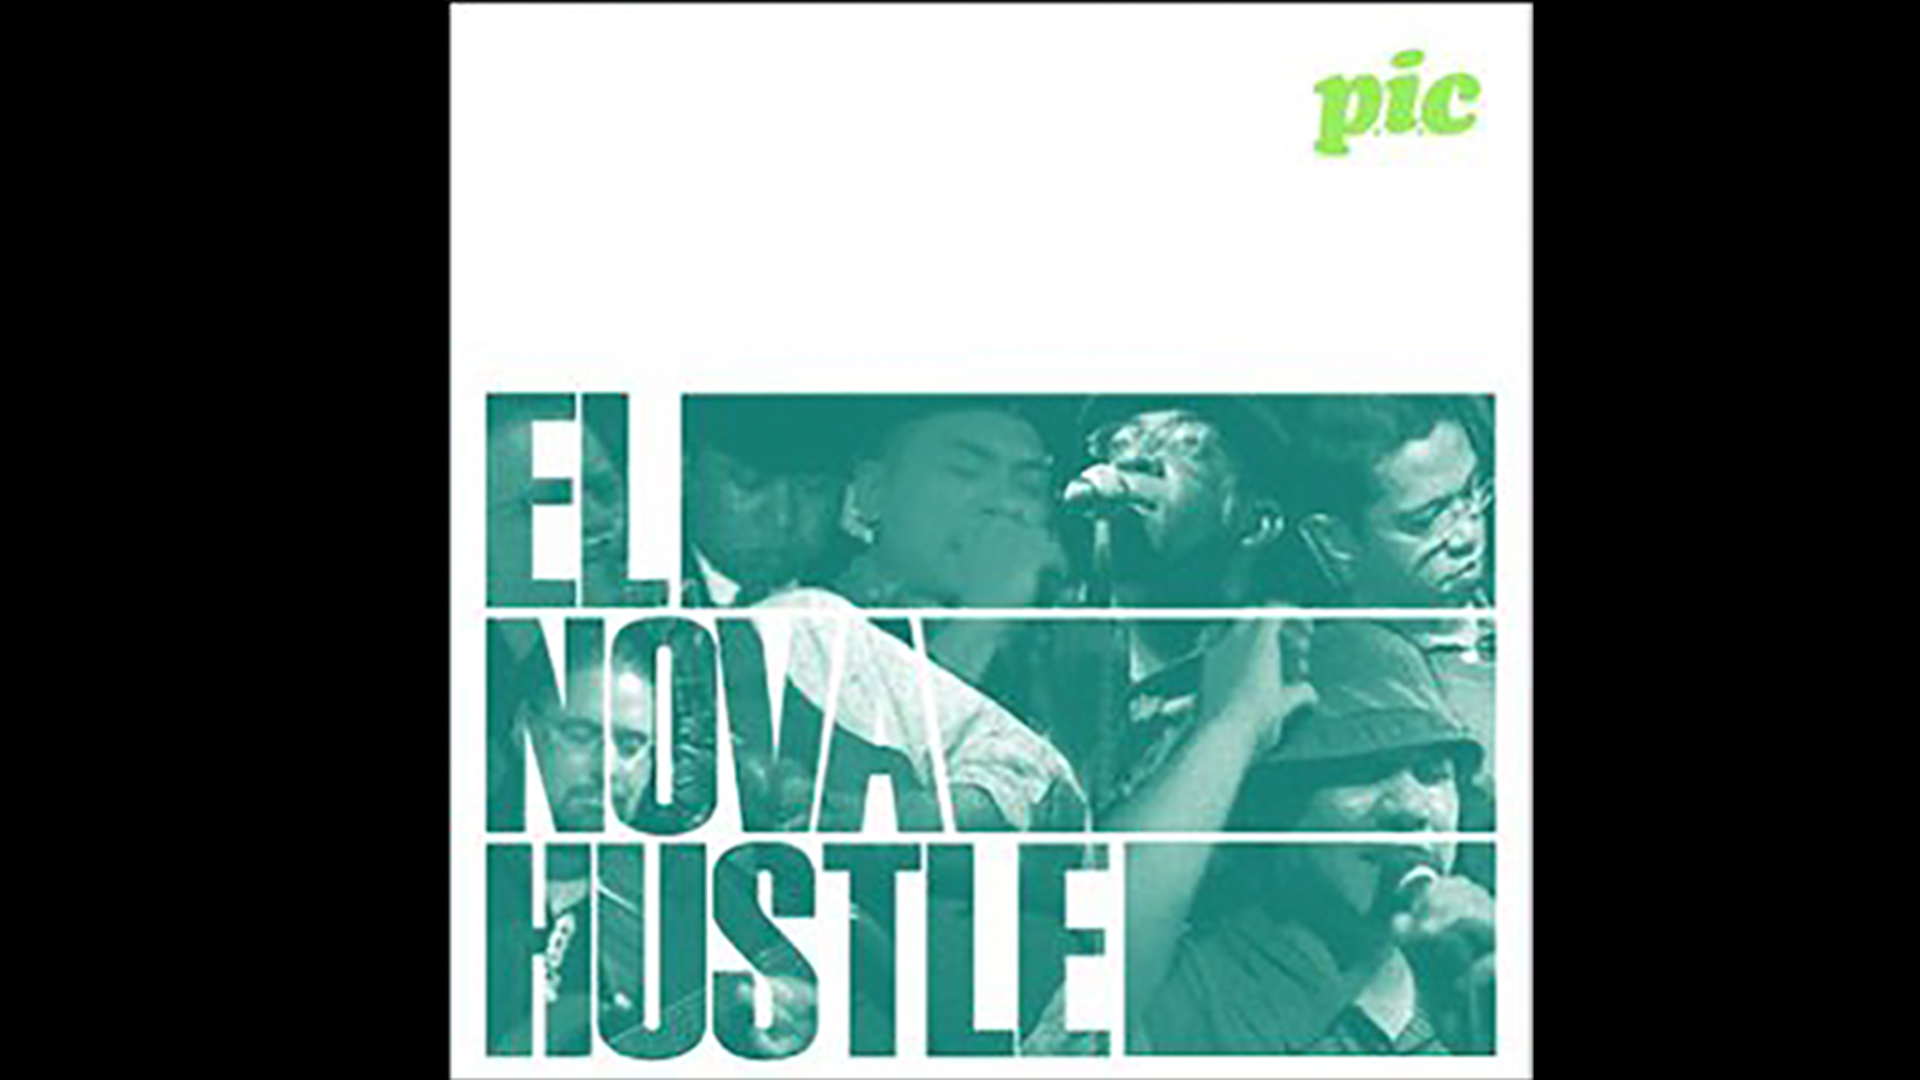 P.I.C "El Nova Hustle"